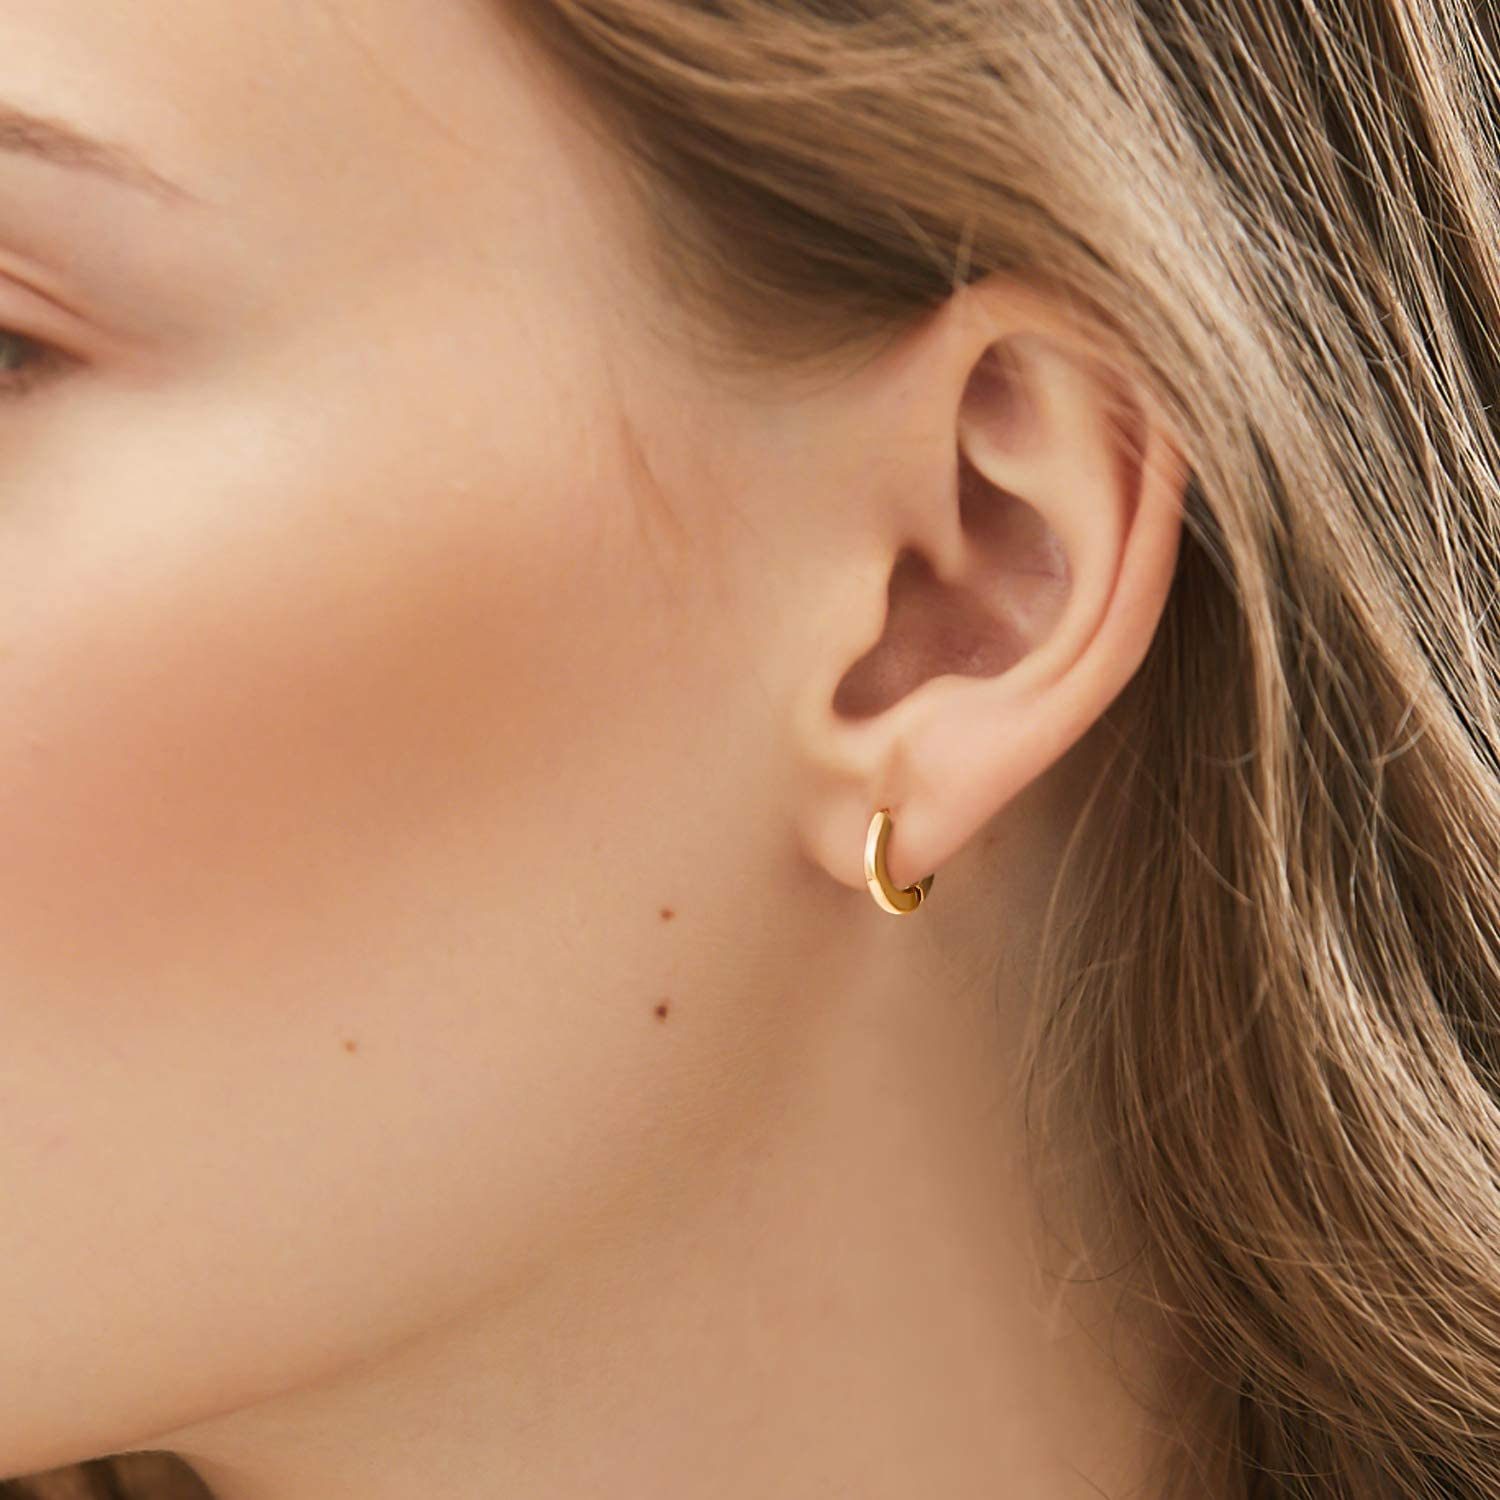 Small Gold Hoop Earrings Ecomm Via Amazon.com